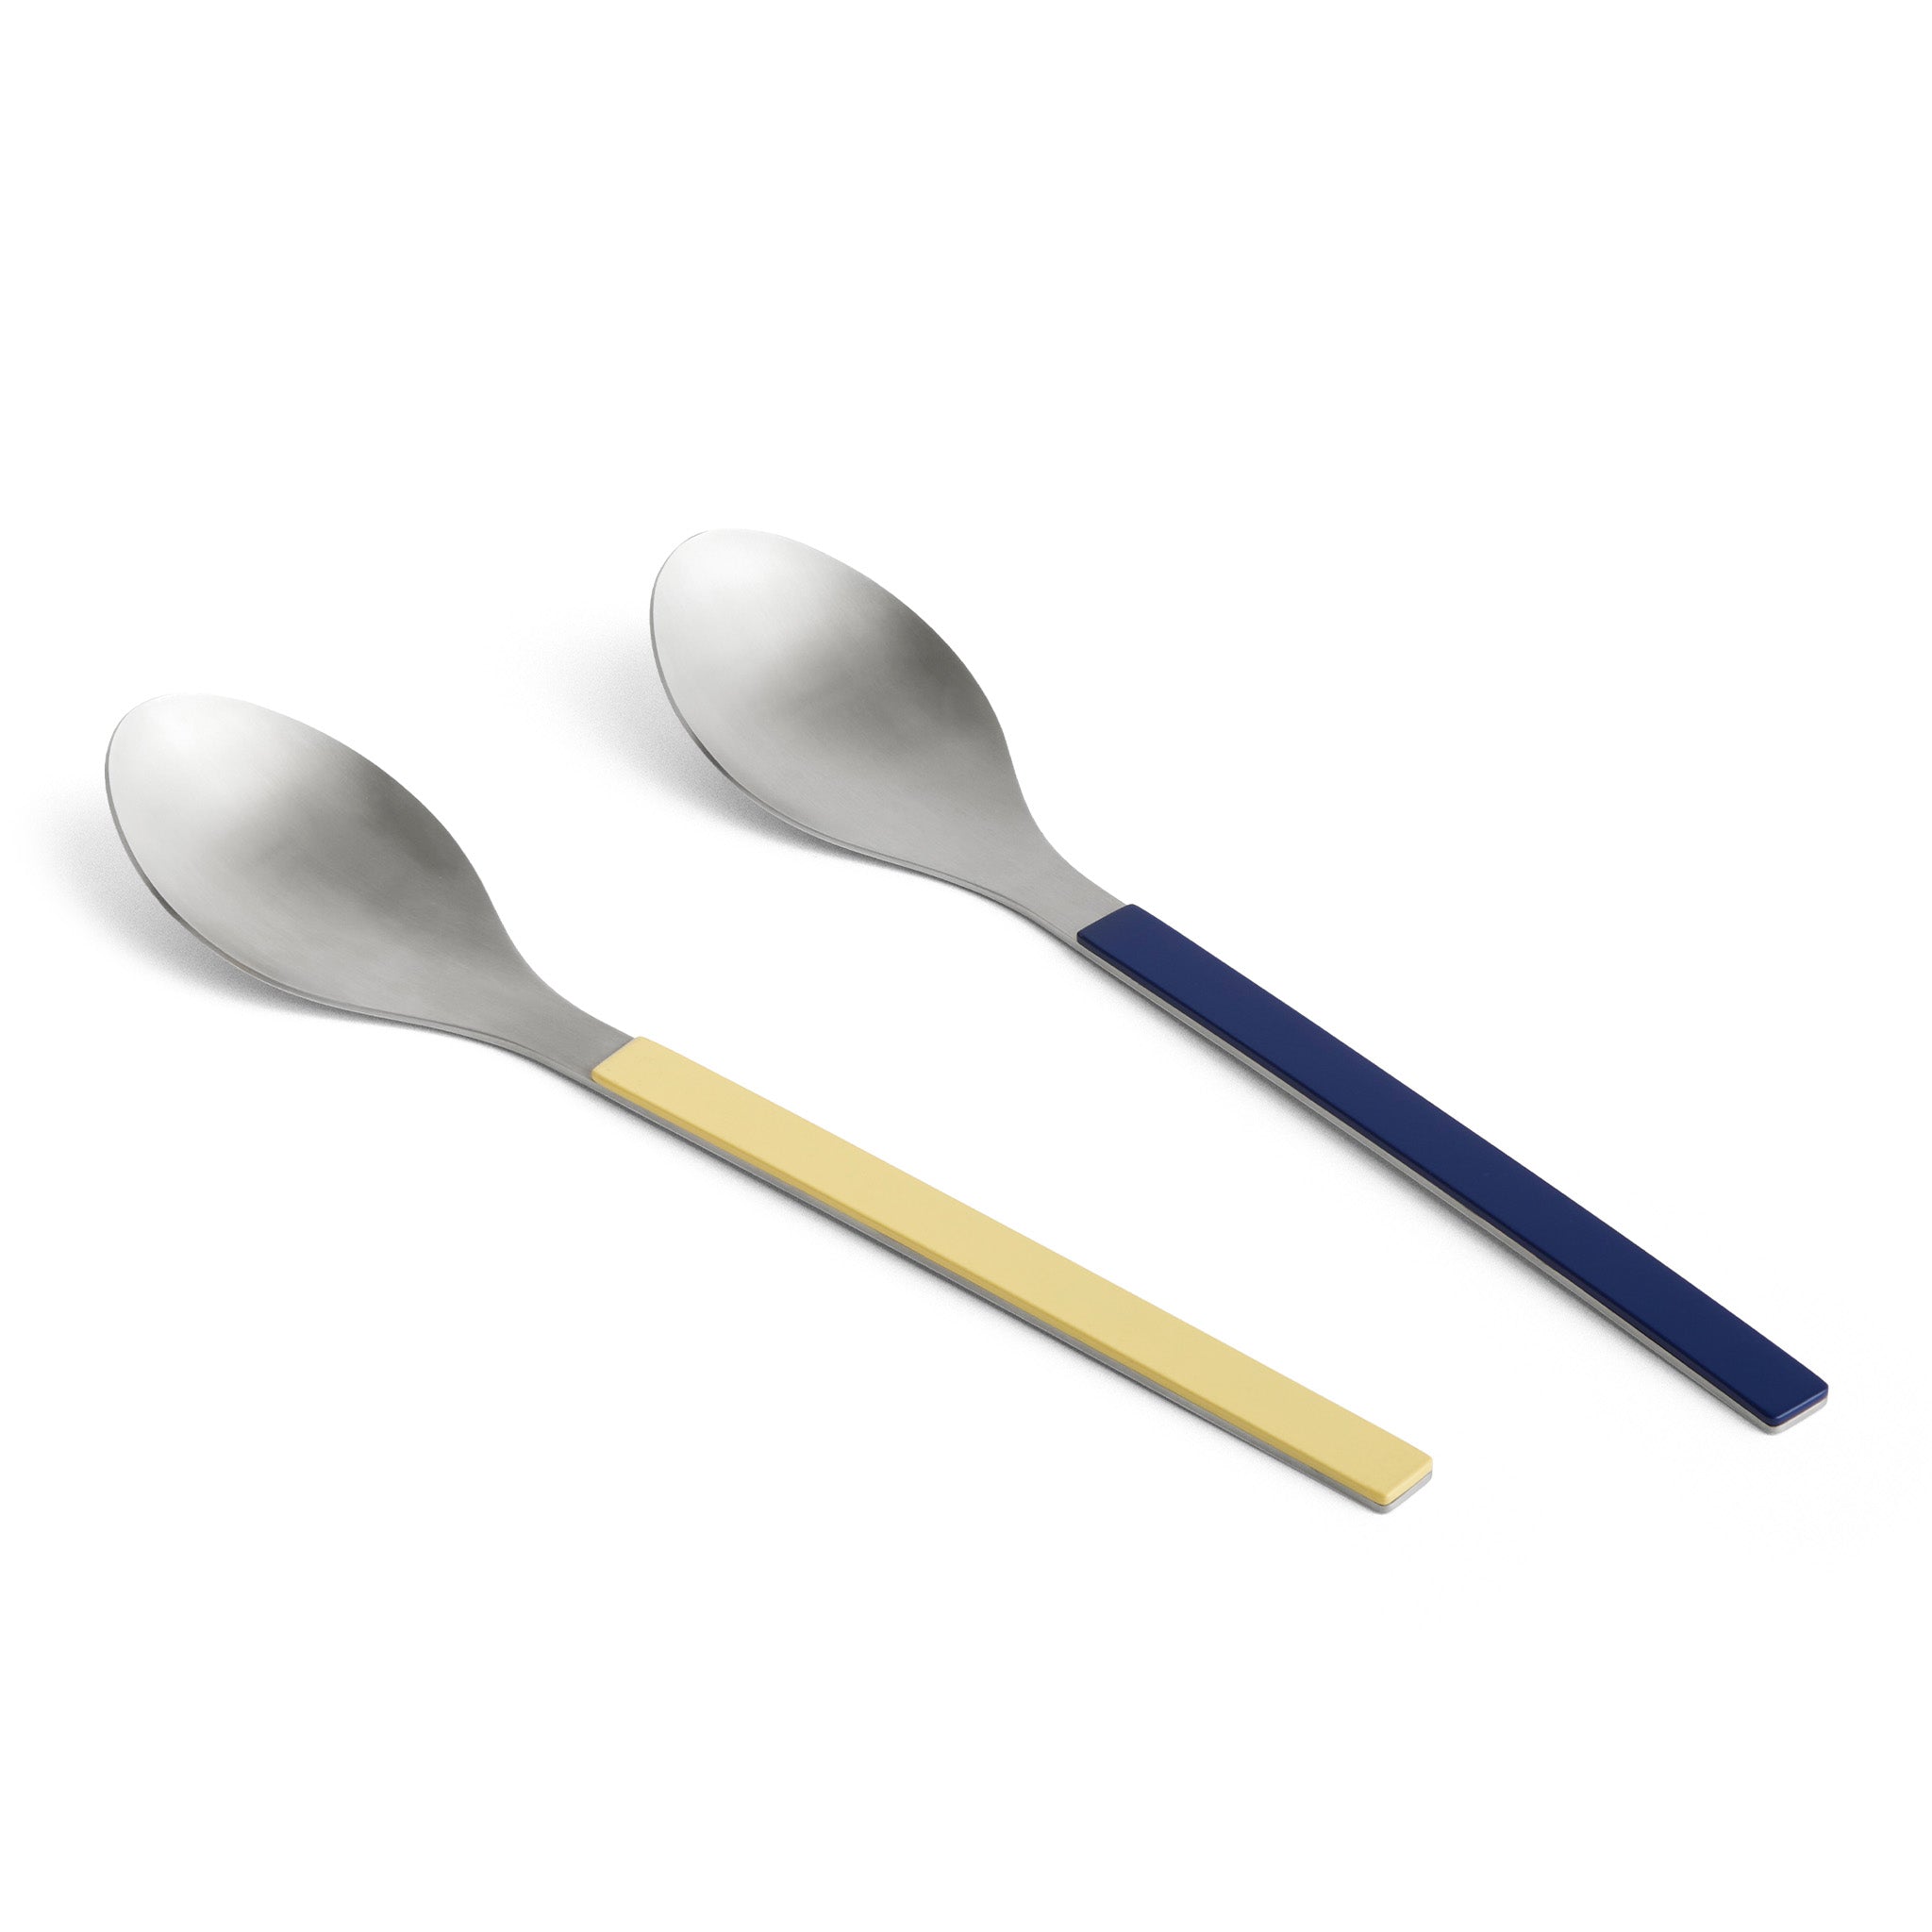 MVS Serving Spoons by Muller van Severen